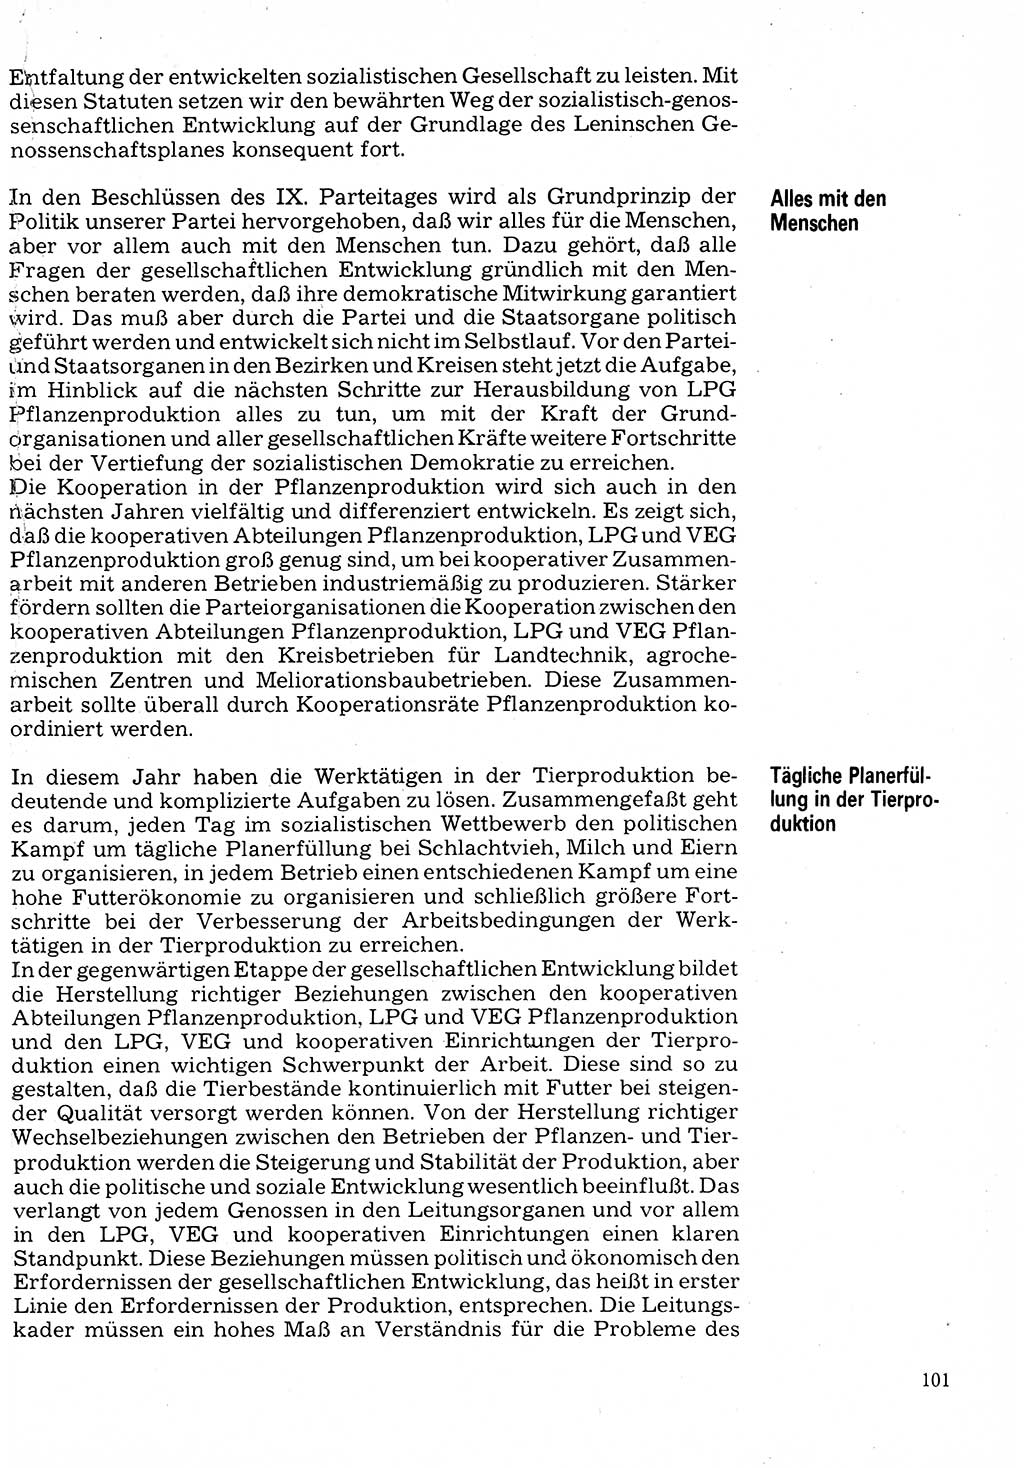 Neuer Weg (NW), Organ des Zentralkomitees (ZK) der SED (Sozialistische Einheitspartei Deutschlands) für Fragen des Parteilebens, 32. Jahrgang [Deutsche Demokratische Republik (DDR)] 1977, Seite 101 (NW ZK SED DDR 1977, S. 101)